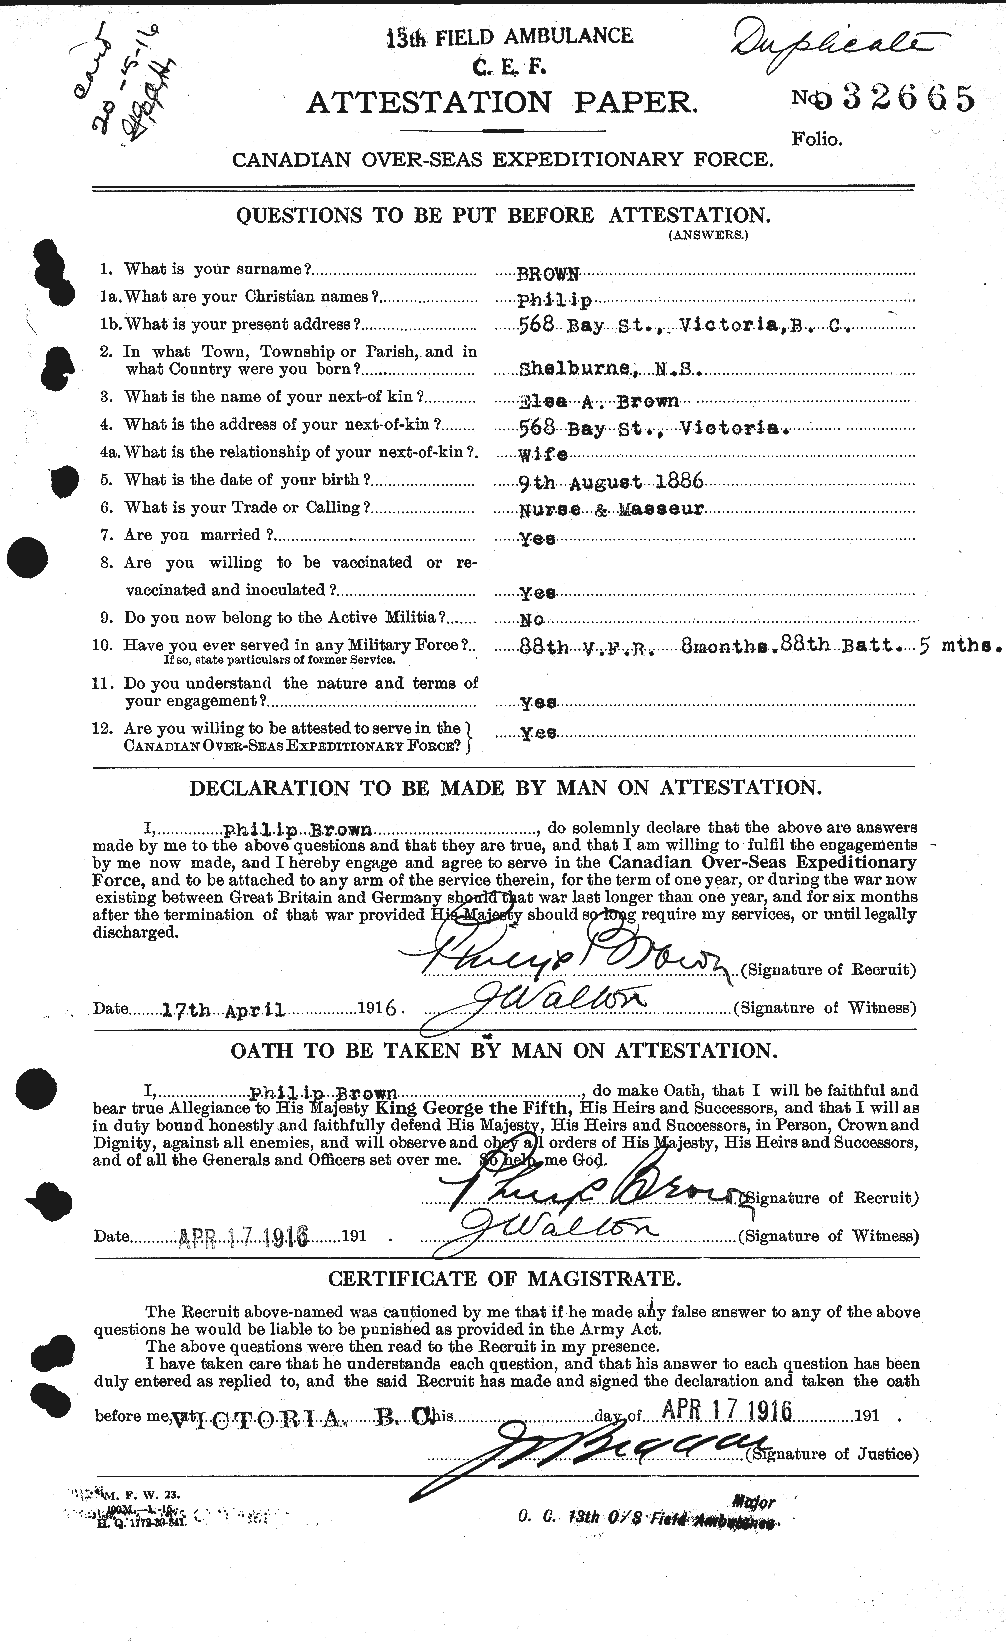 Dossiers du Personnel de la Première Guerre mondiale - CEC 267210a